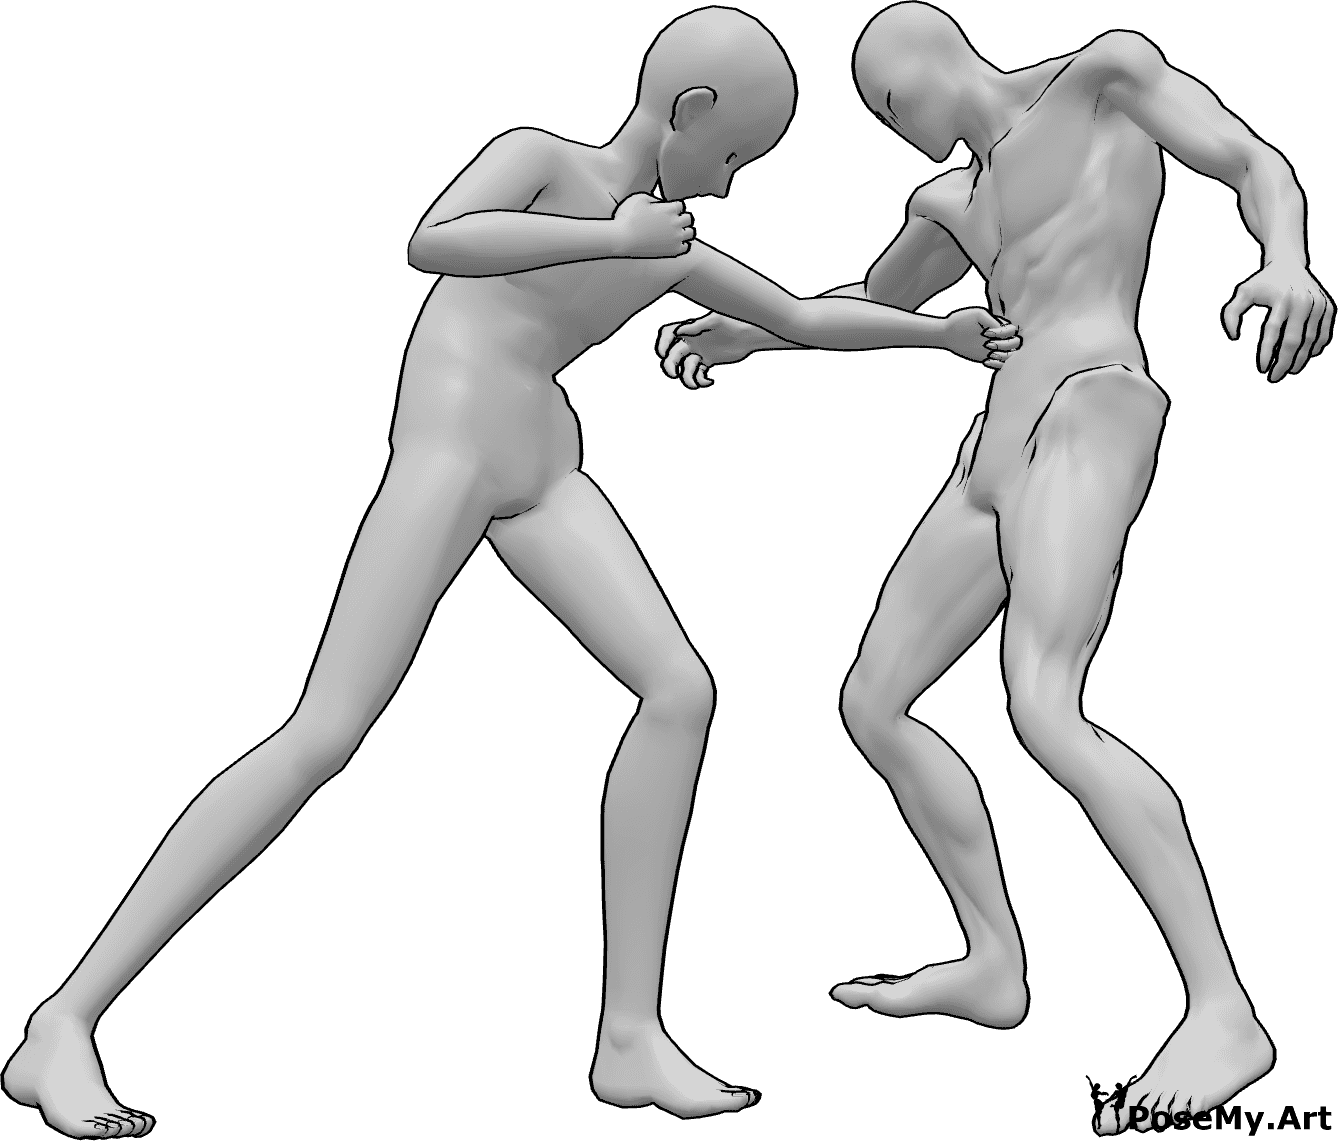 Referencia de poses- Postura anime de puñetazo en el estómago - Hombre anime está golpeando al enemigo en el estómago con su mano izquierda